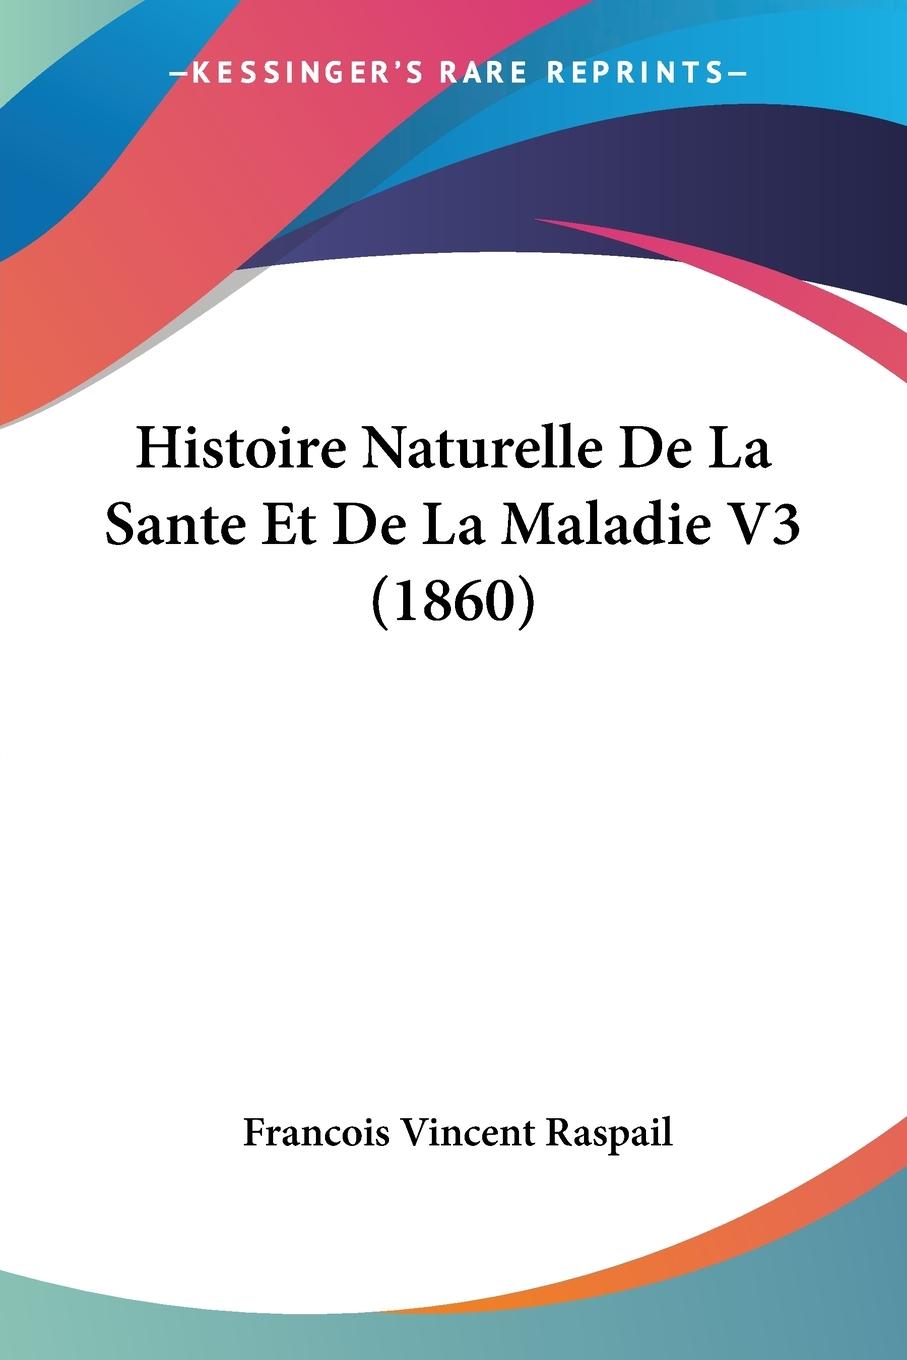 Histoire Naturelle De La Sante Et De La Maladie V3 (1860) - Raspail, Francois Vincent